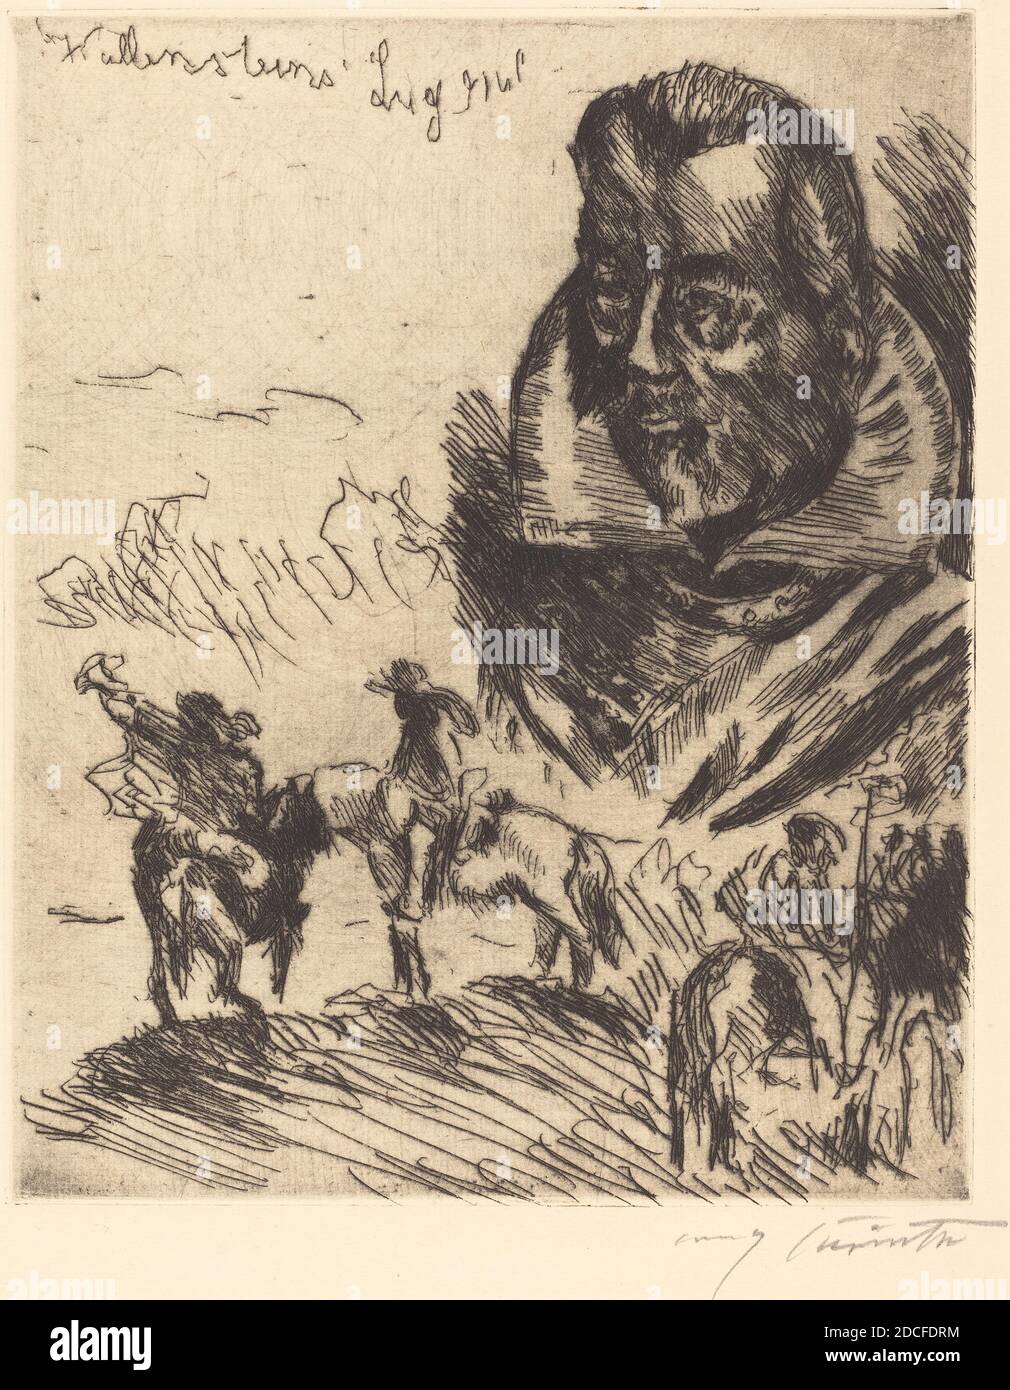 Lovis Corinth, (Künstler), deutsch, 1858 - 1925, Titelbild (Titelseite), Wallensteins Lager, (Serie), 1923, schwarze Radierung auf Büttenpapier, Platte: 25.8 x 20.9 cm (10 3/16 x 8 1/4 Zoll), Blatt: 40.2 x 29 cm (15 13/16 x 11 7/16 Zoll Stockfoto